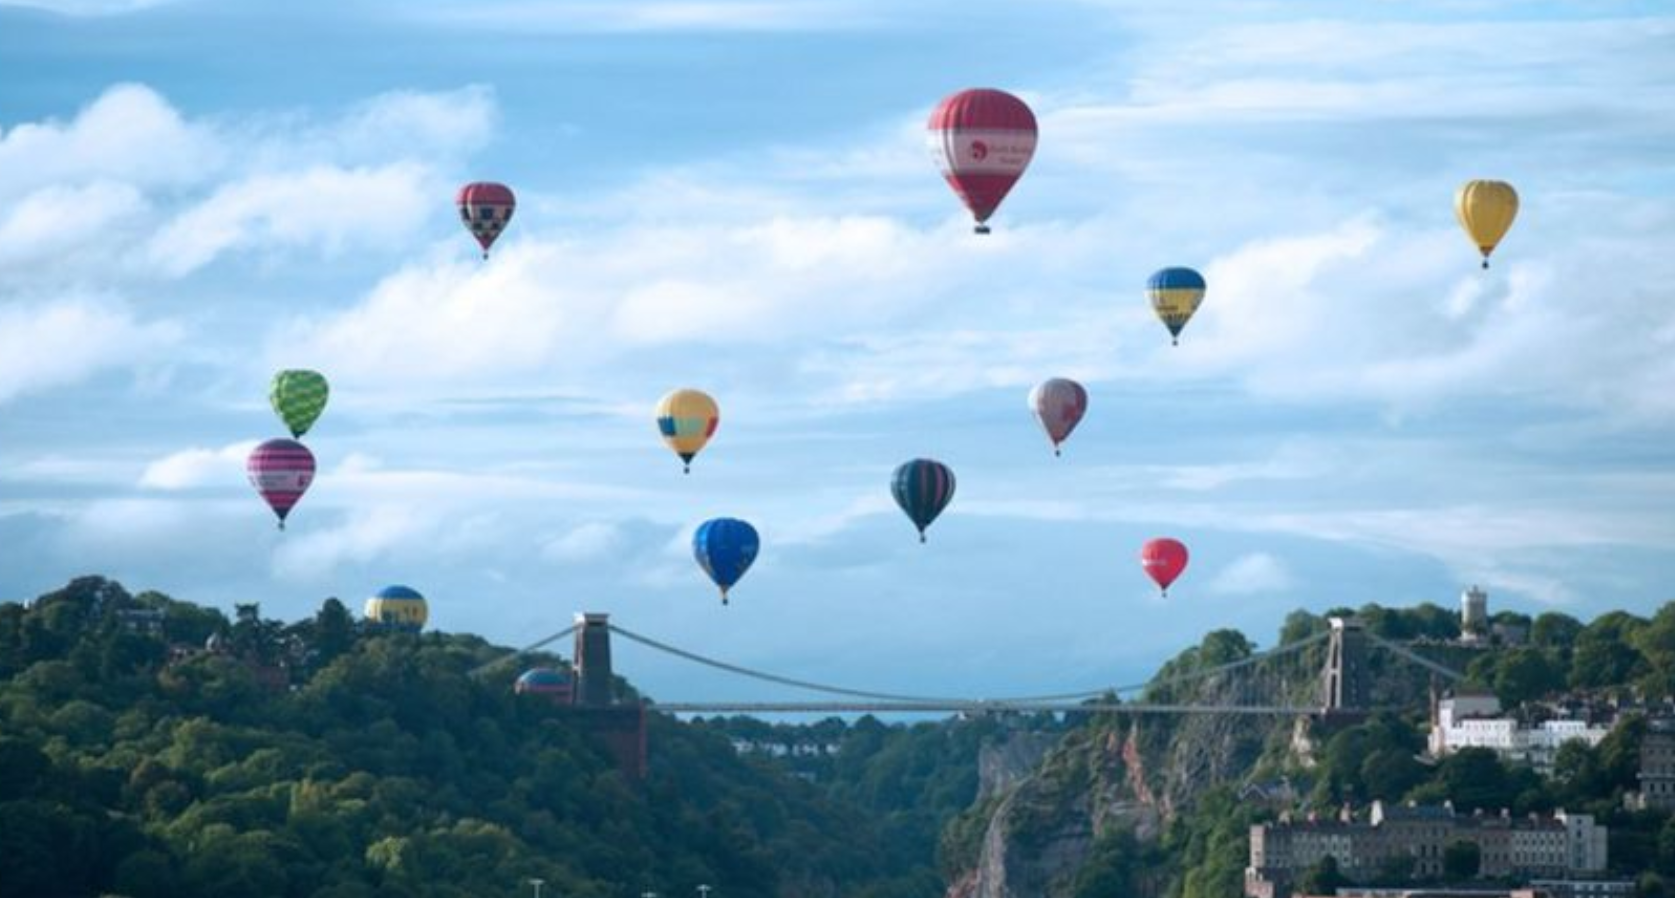 Hot air balloon fiesta at Bristol to go ahead